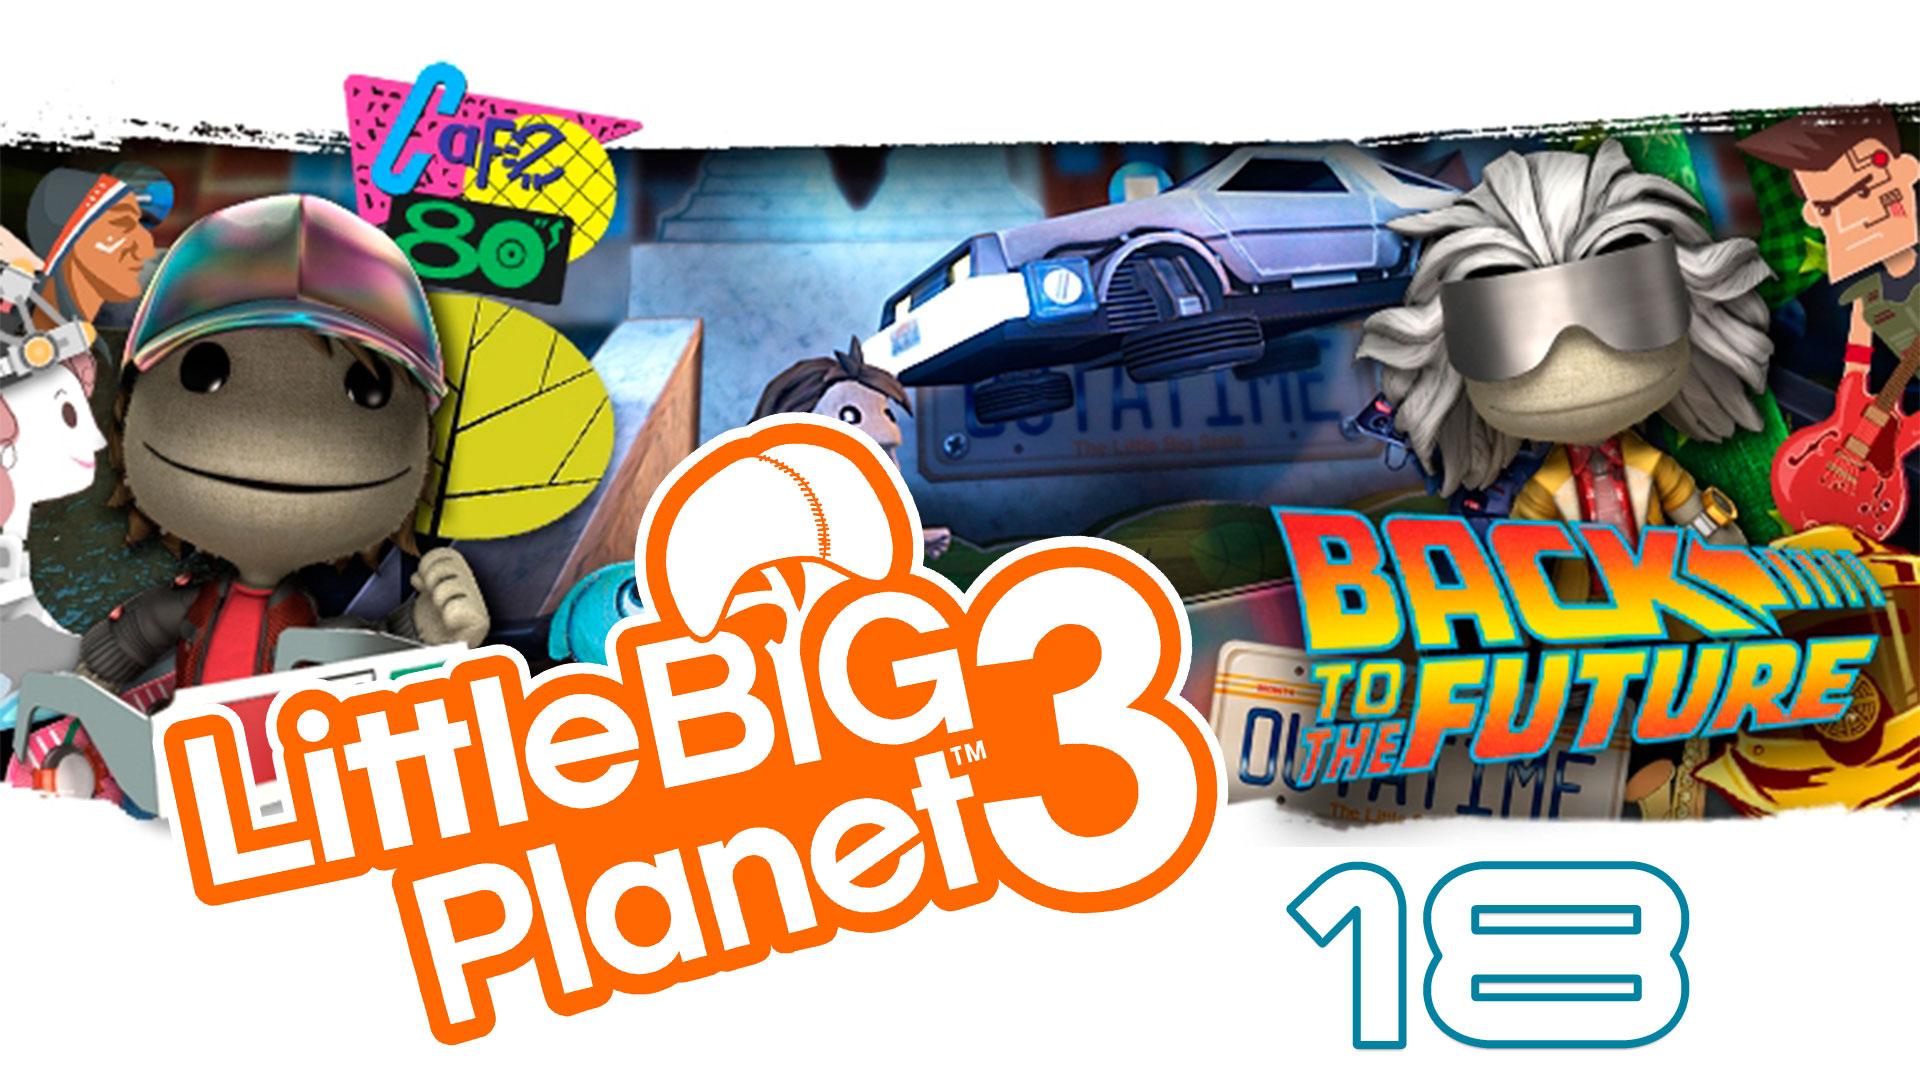 LittleBigPlanet 3 - Сезон 2 - Кооператив - Назад в будущее - Прохождение игры [#18] | PS4 (2016 г.)